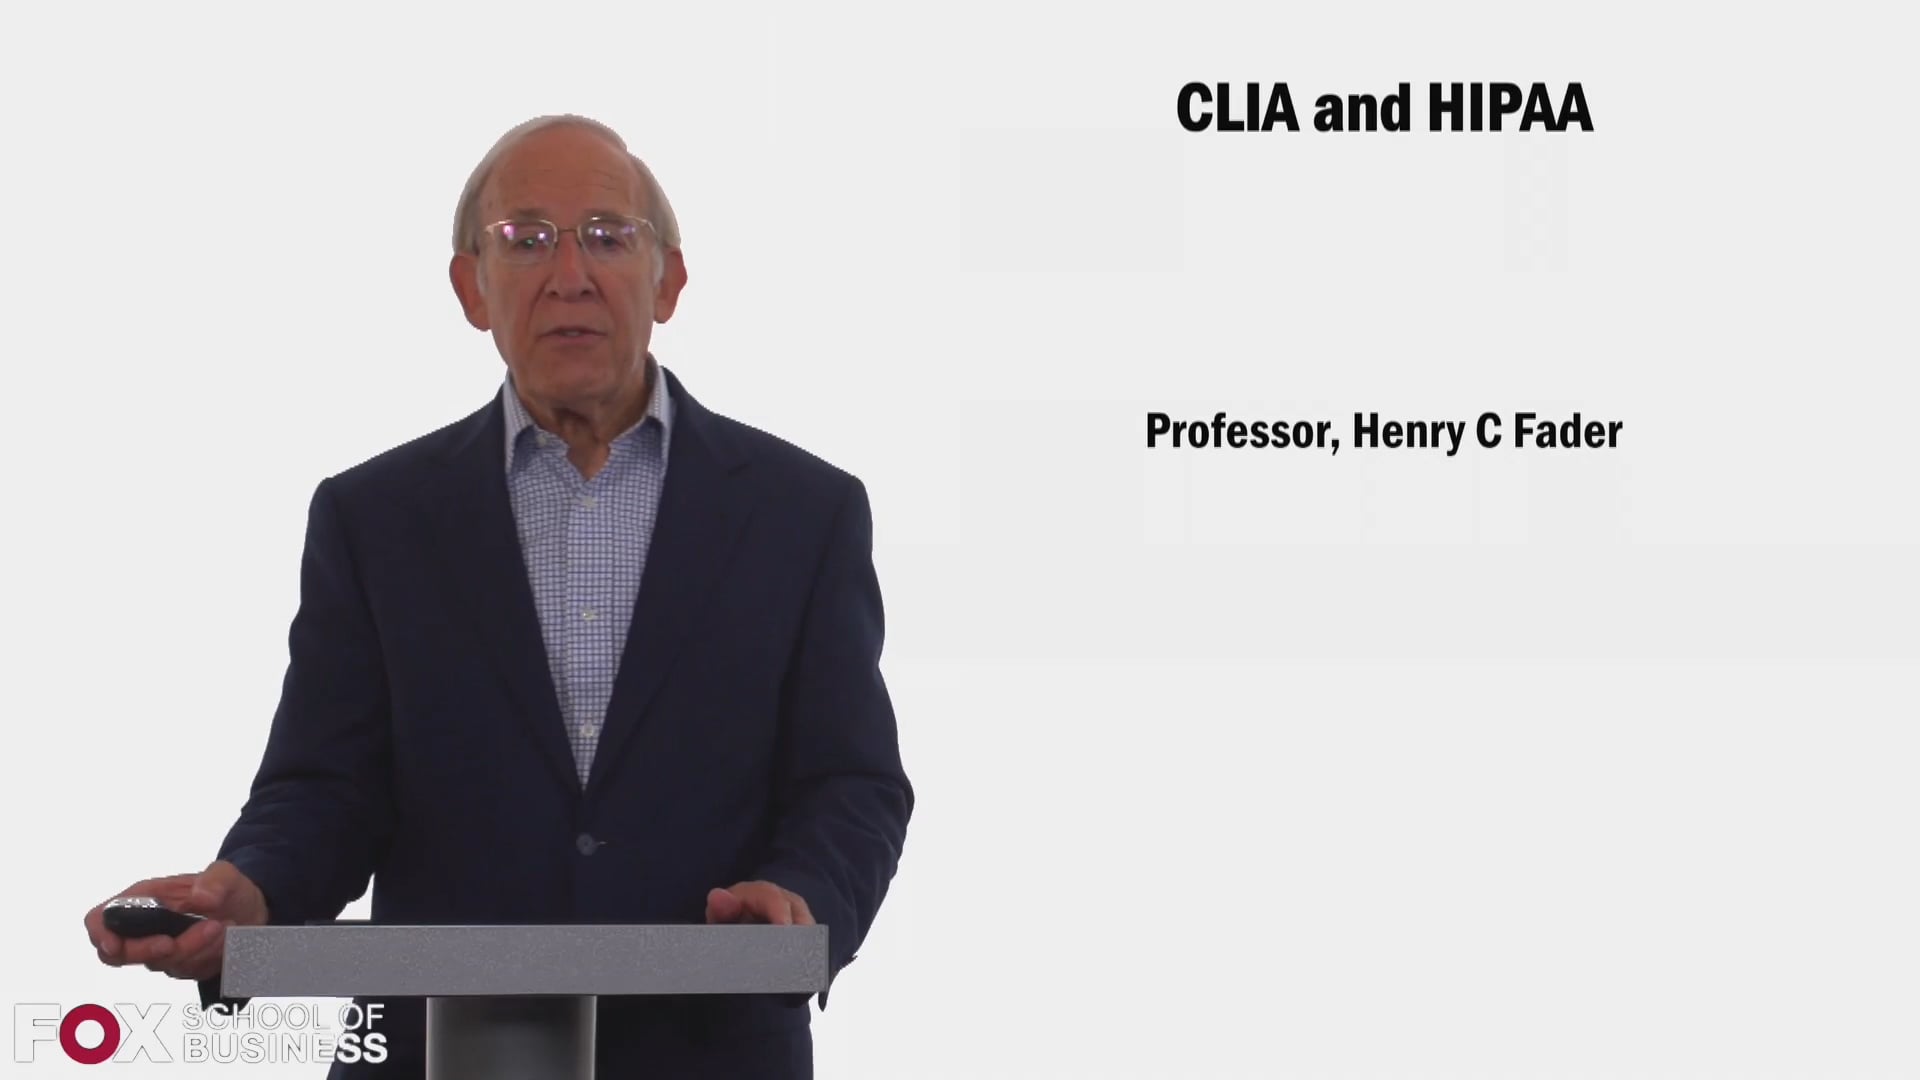 CLIA and HIPAA